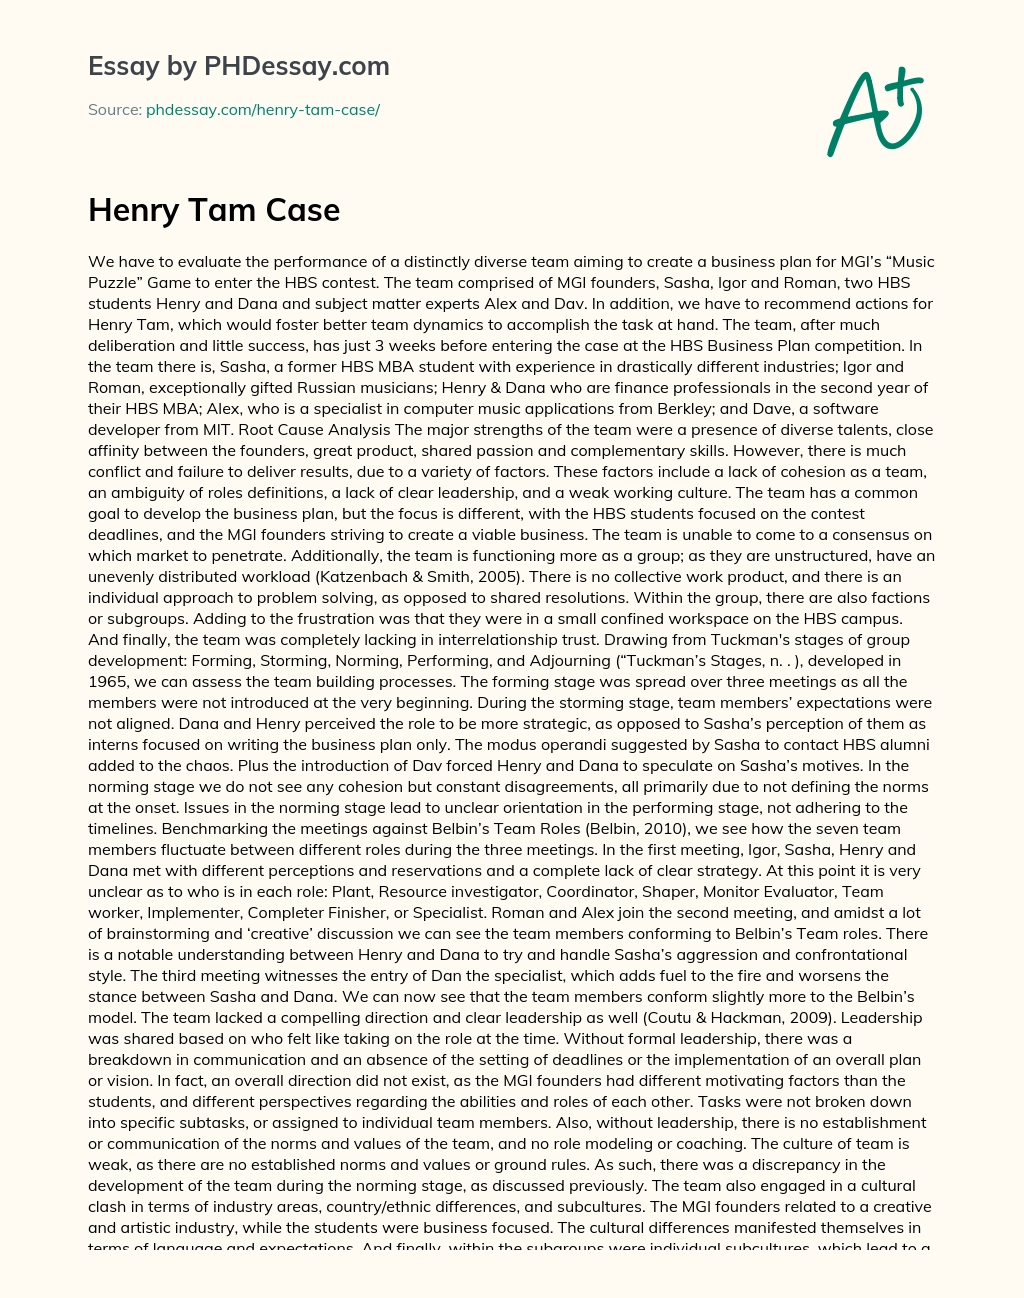 Henry Tam Case essay